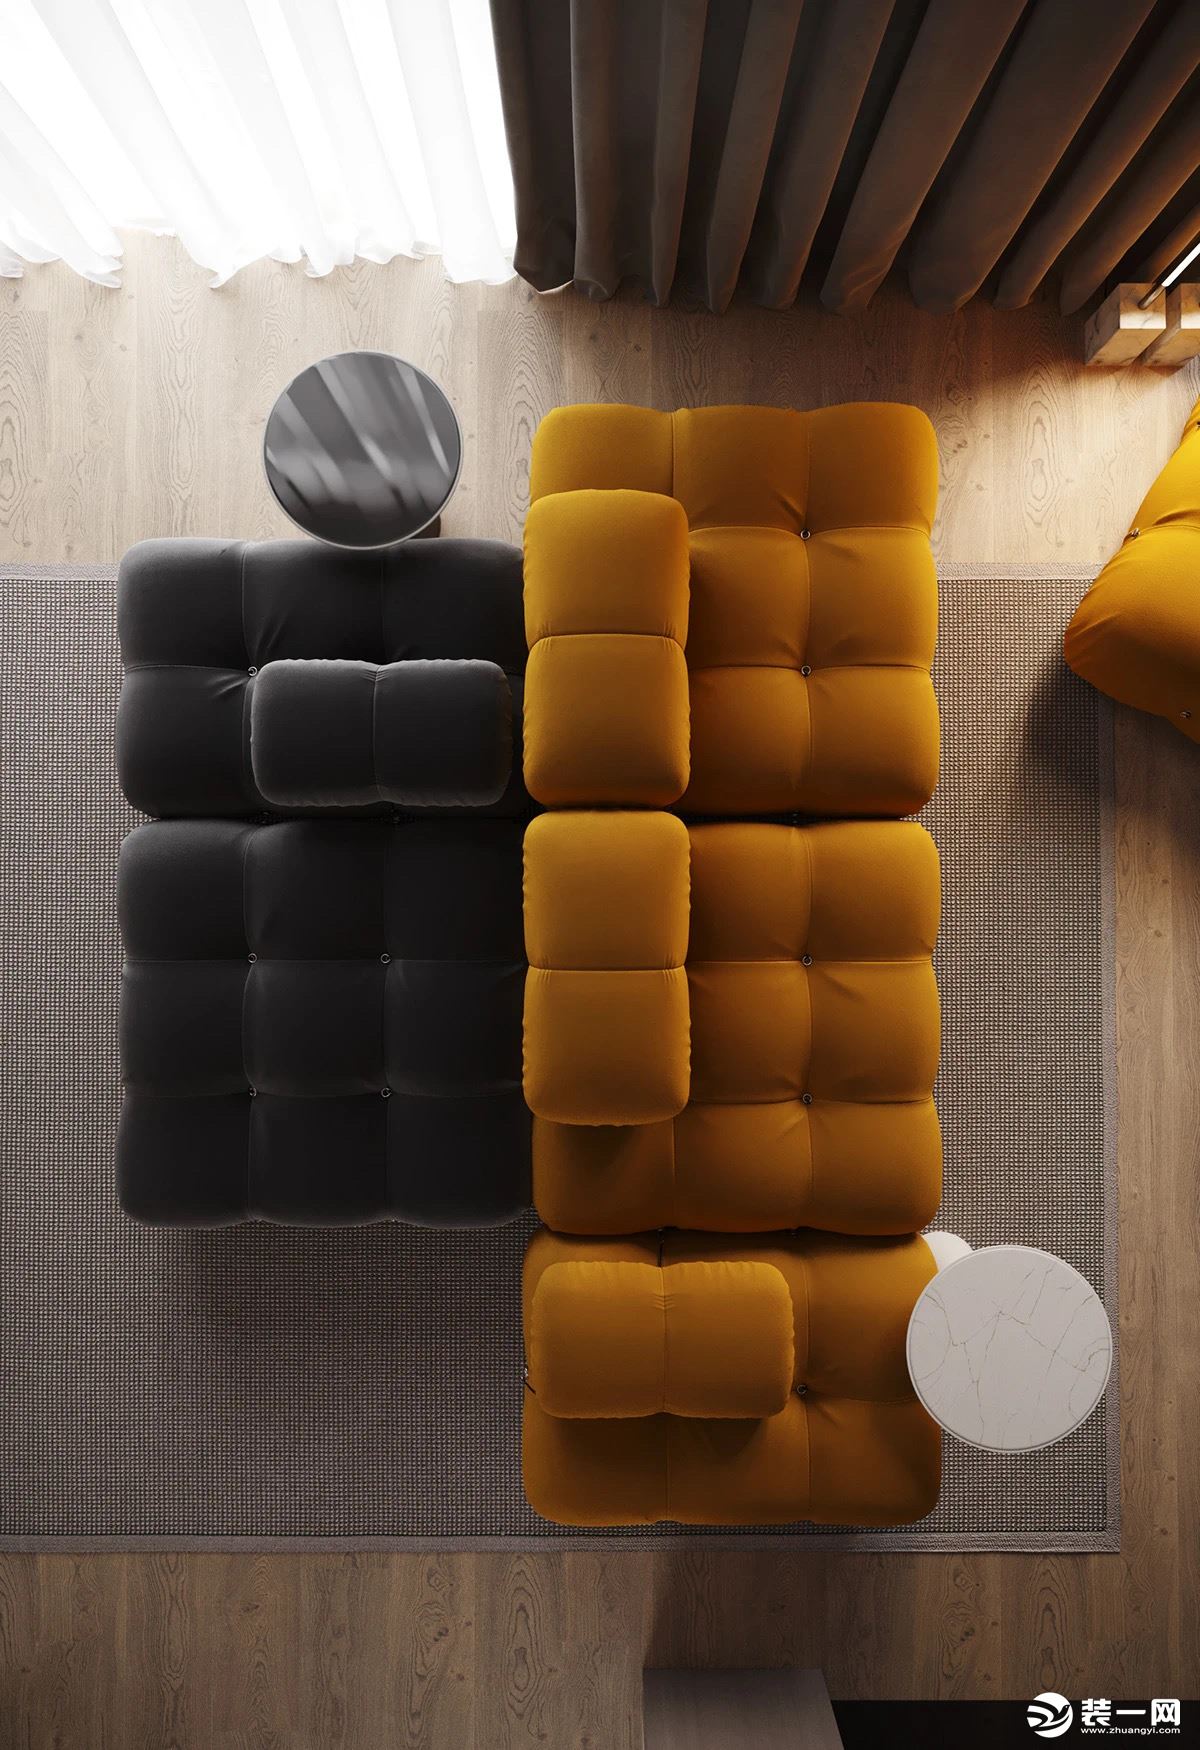 客厅的色彩以橘黄色和灰黑色的沙发为主，柔软的体积和优美的线条弧度让空间更具现代感，明暗色系的结合让氛